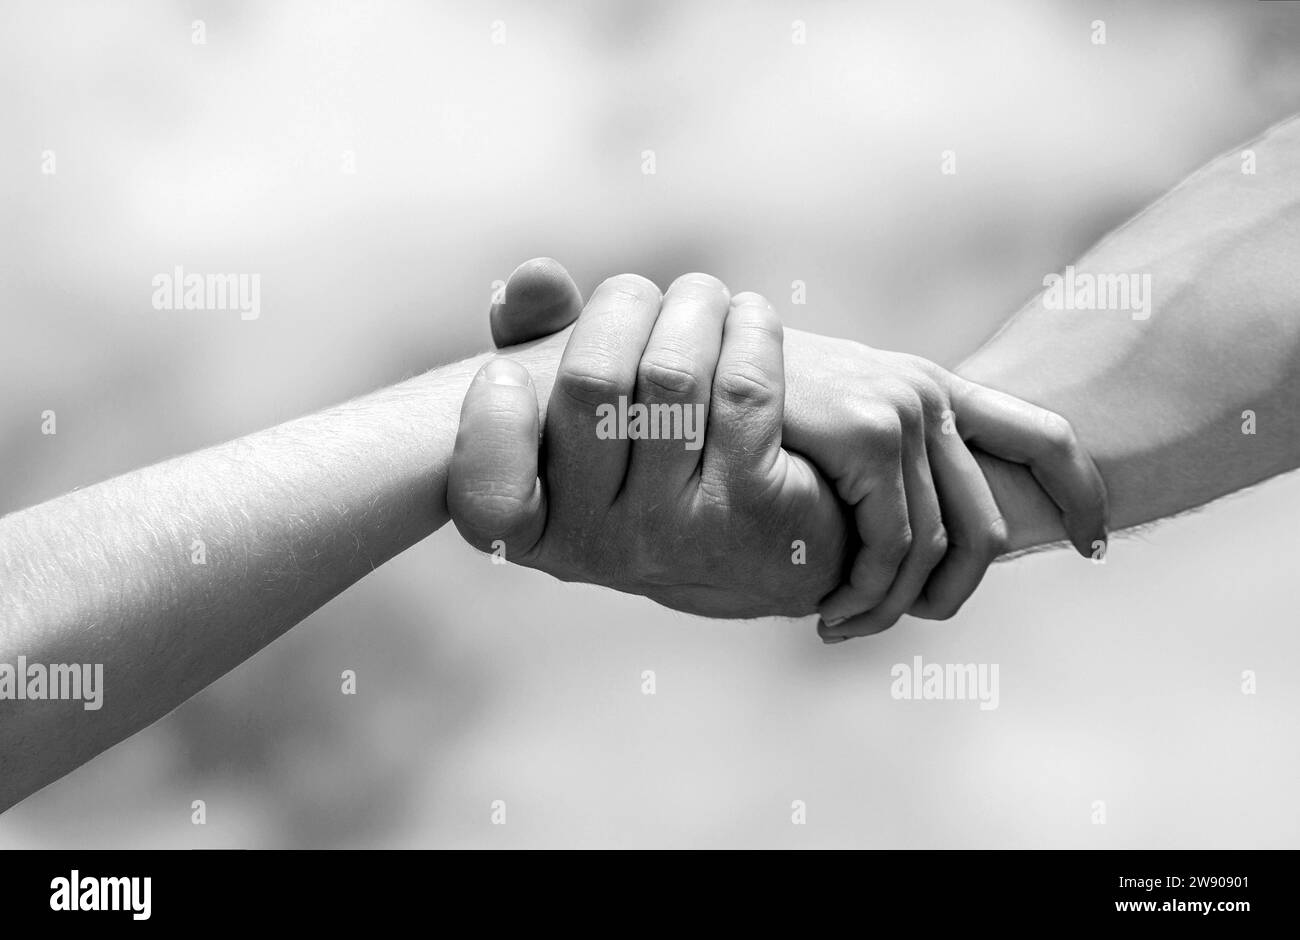 Ich helfe dir. Die Hände von Mann und Frau greifen sich gegenseitig an, unterstützen. Solidarität, Mitgefühl, Nächstenliebe, Rettung. Schwarz auf Weiß Stockfoto